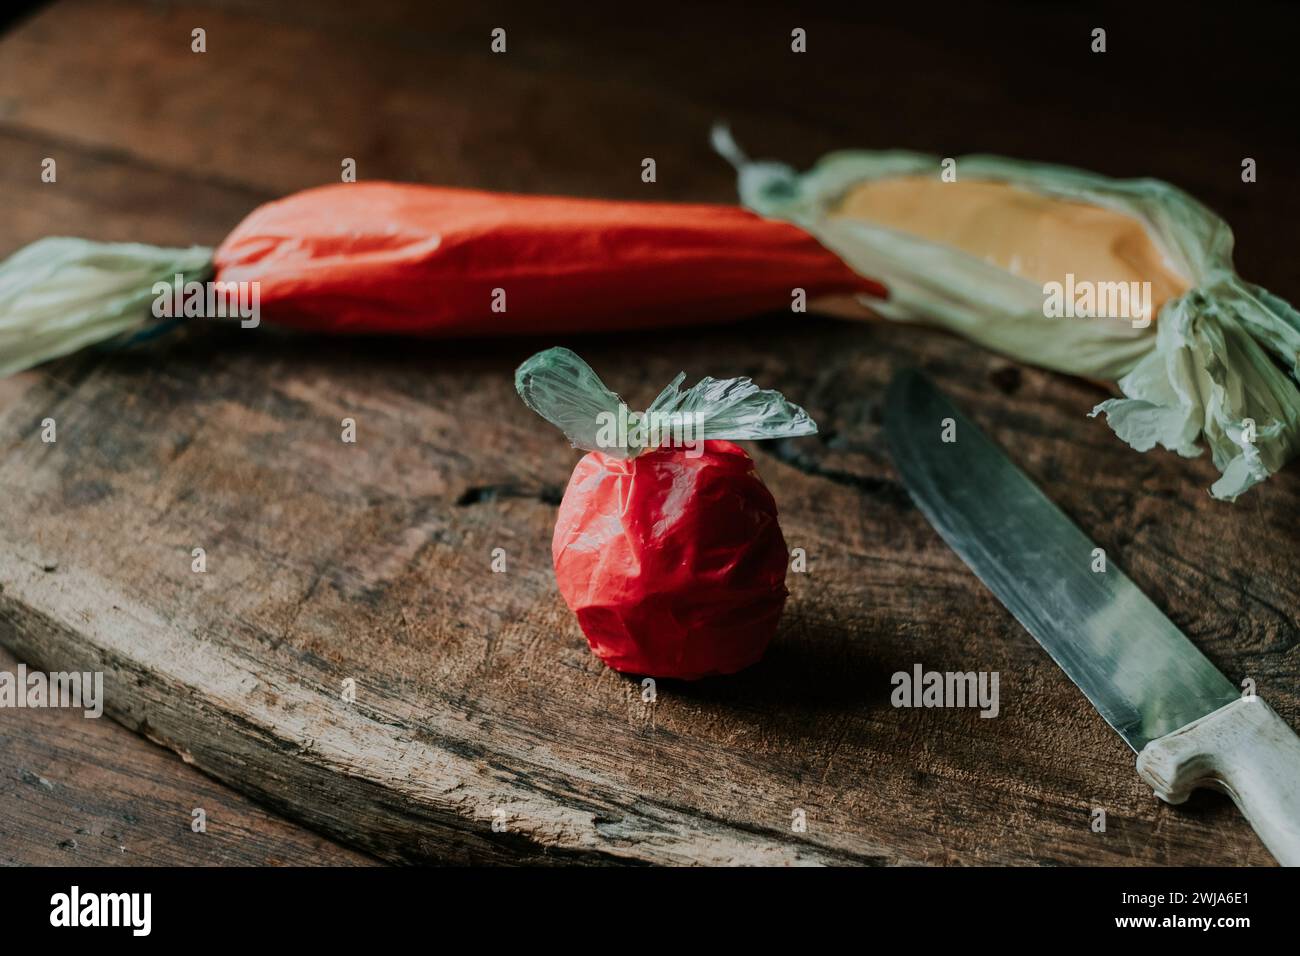 Plastiktüten in Form einer Tomate, Karotte und Paprika neben einem Messer auf einer alten Holzoberfläche Stockfoto